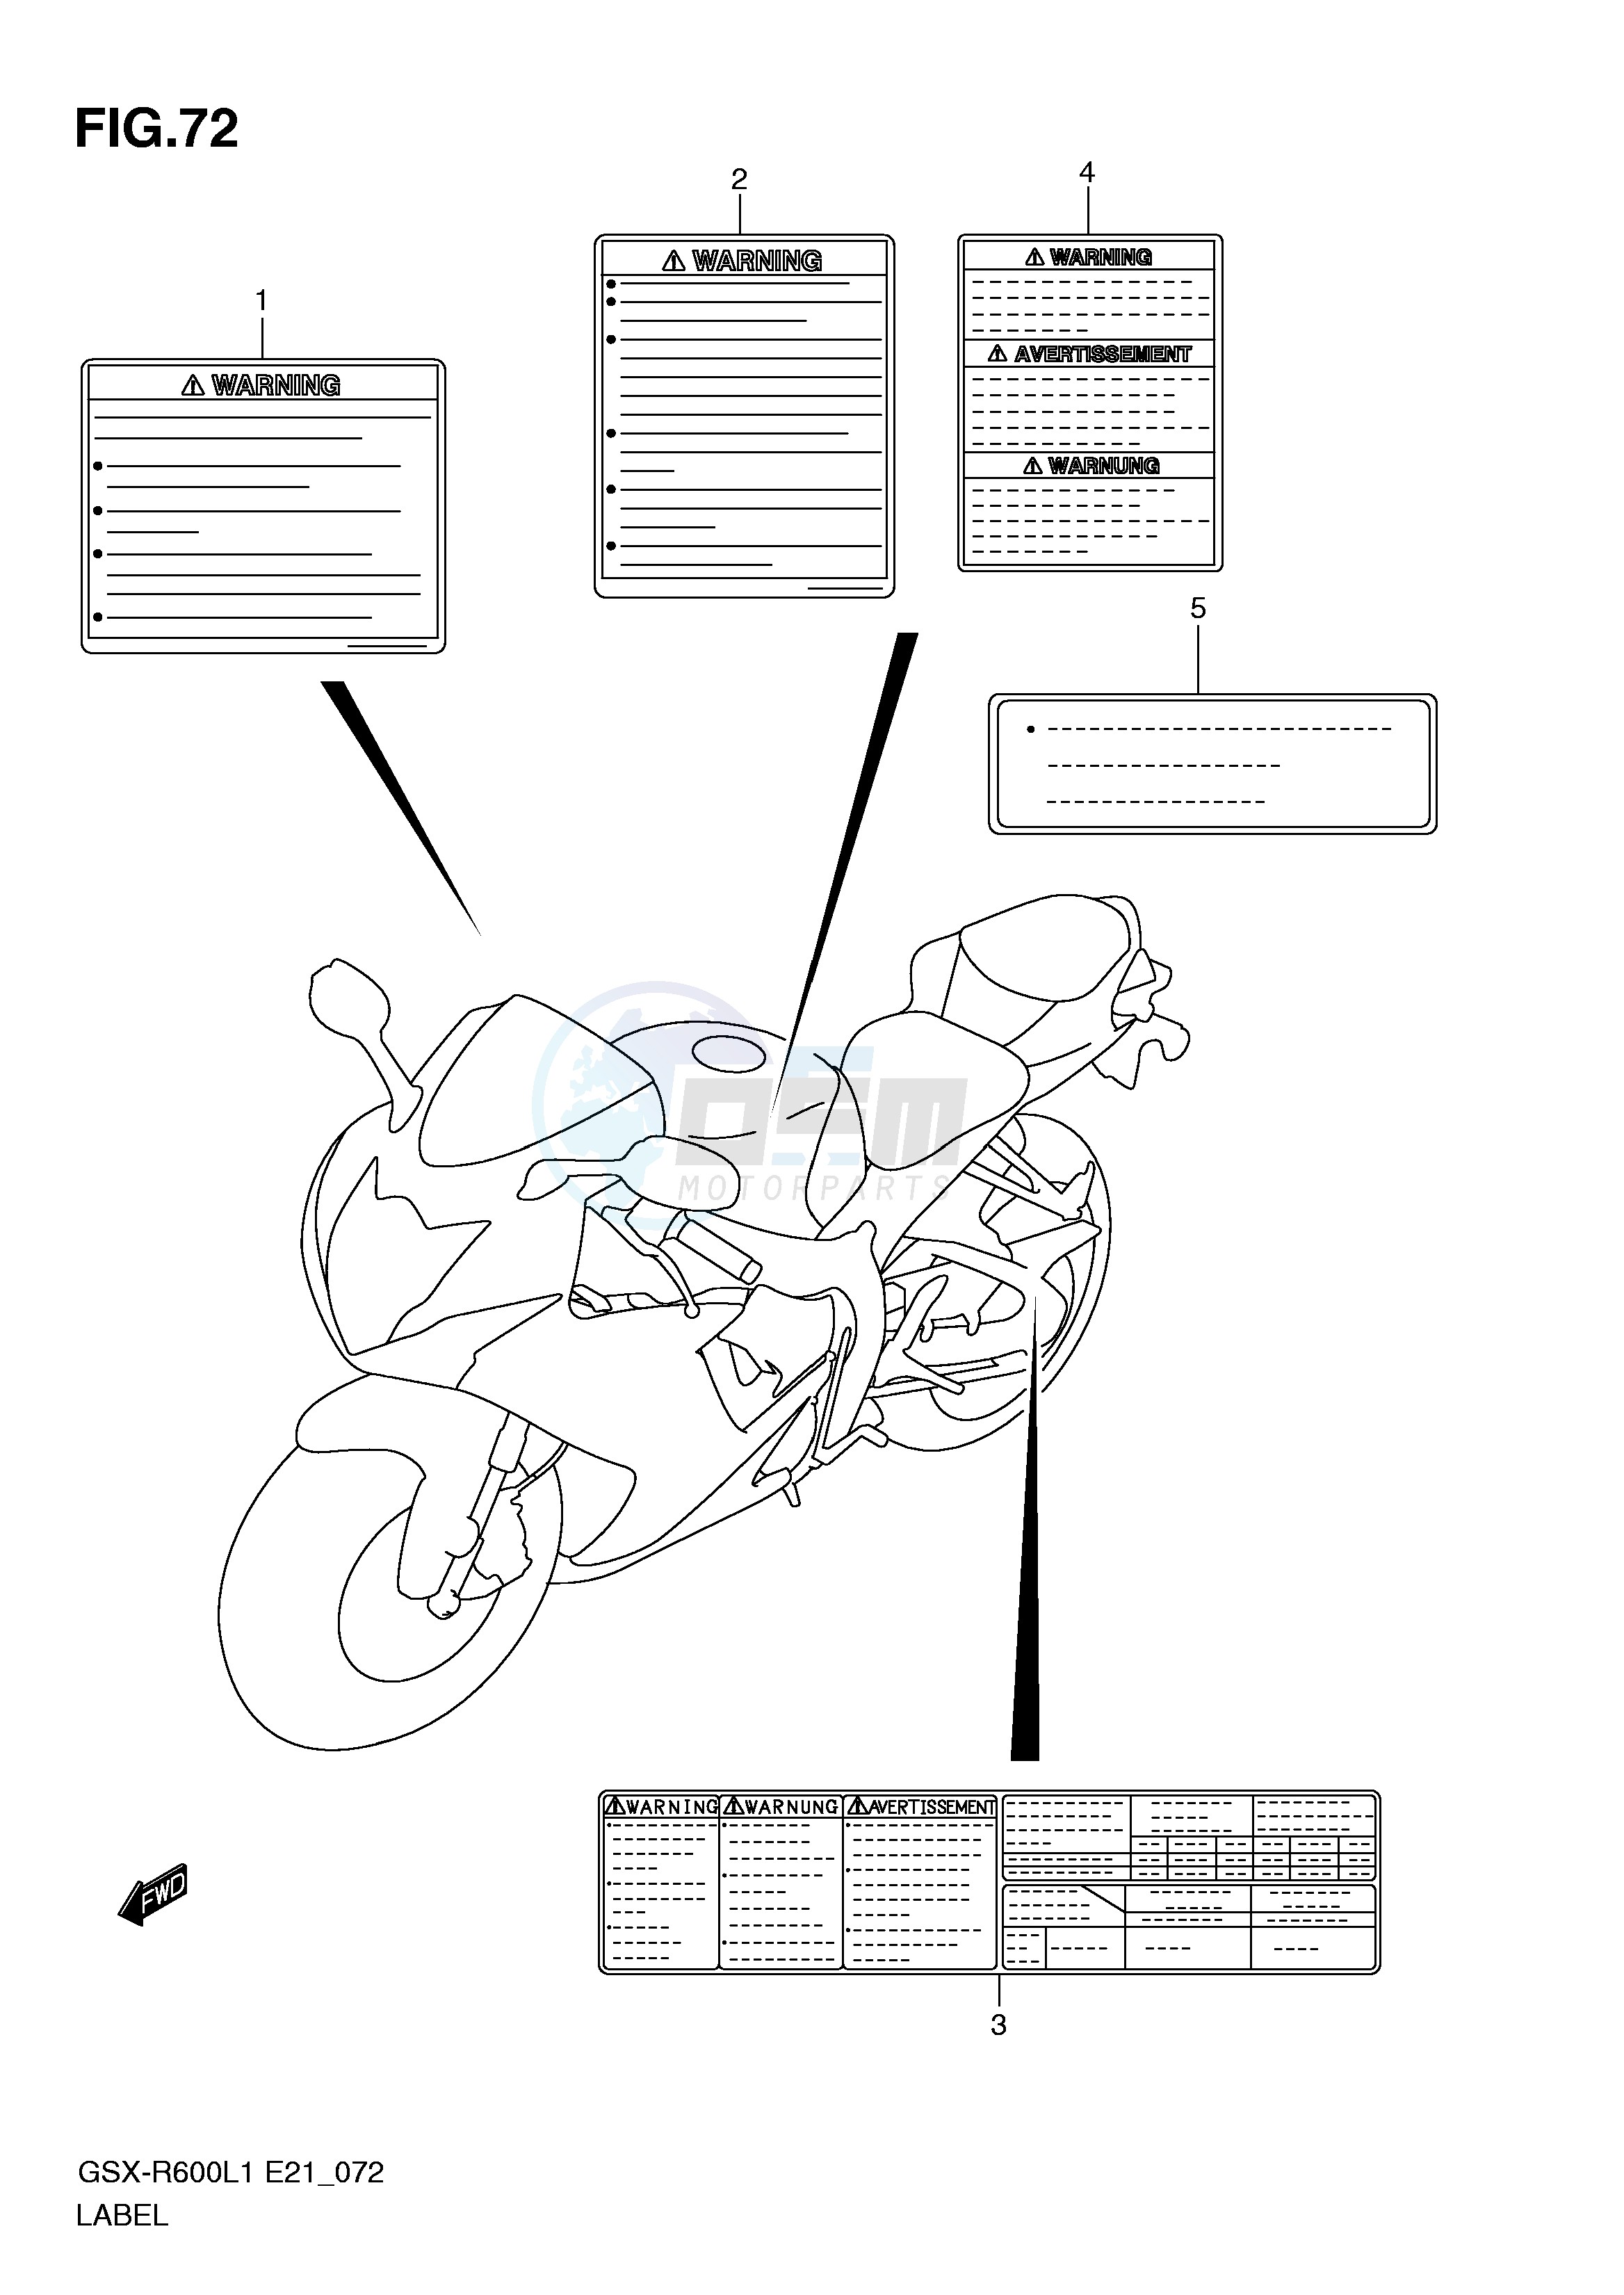 LABEL (GSX-R600L1 E24) blueprint